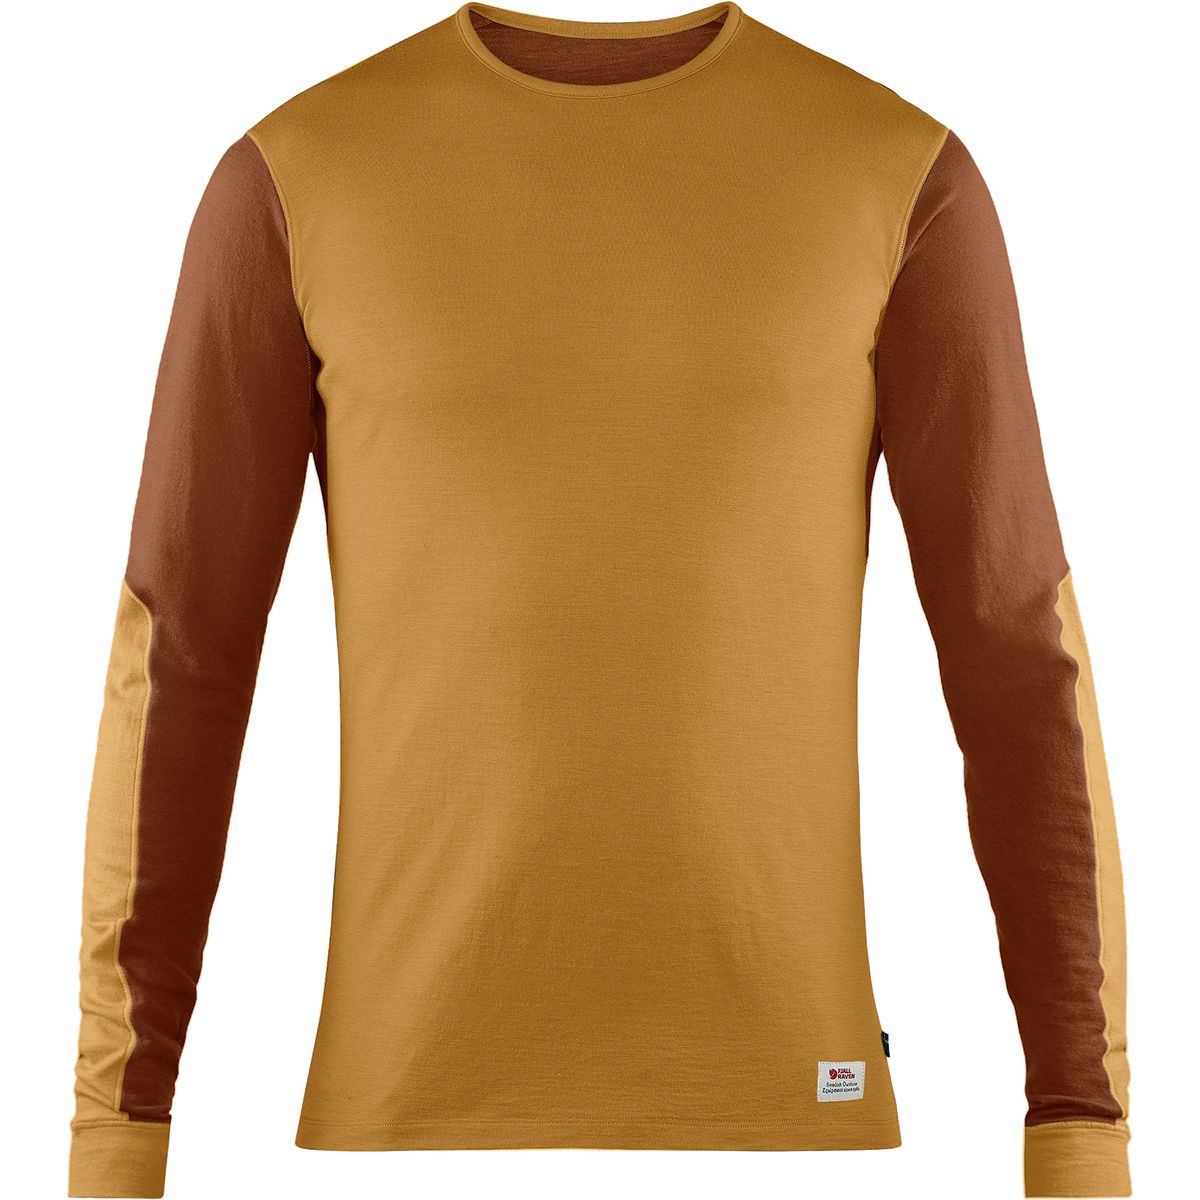 Grand Modtagelig for Ære Fjallraven Keb Wool Long-Sleeve T-Shirt - Men's - Clothing